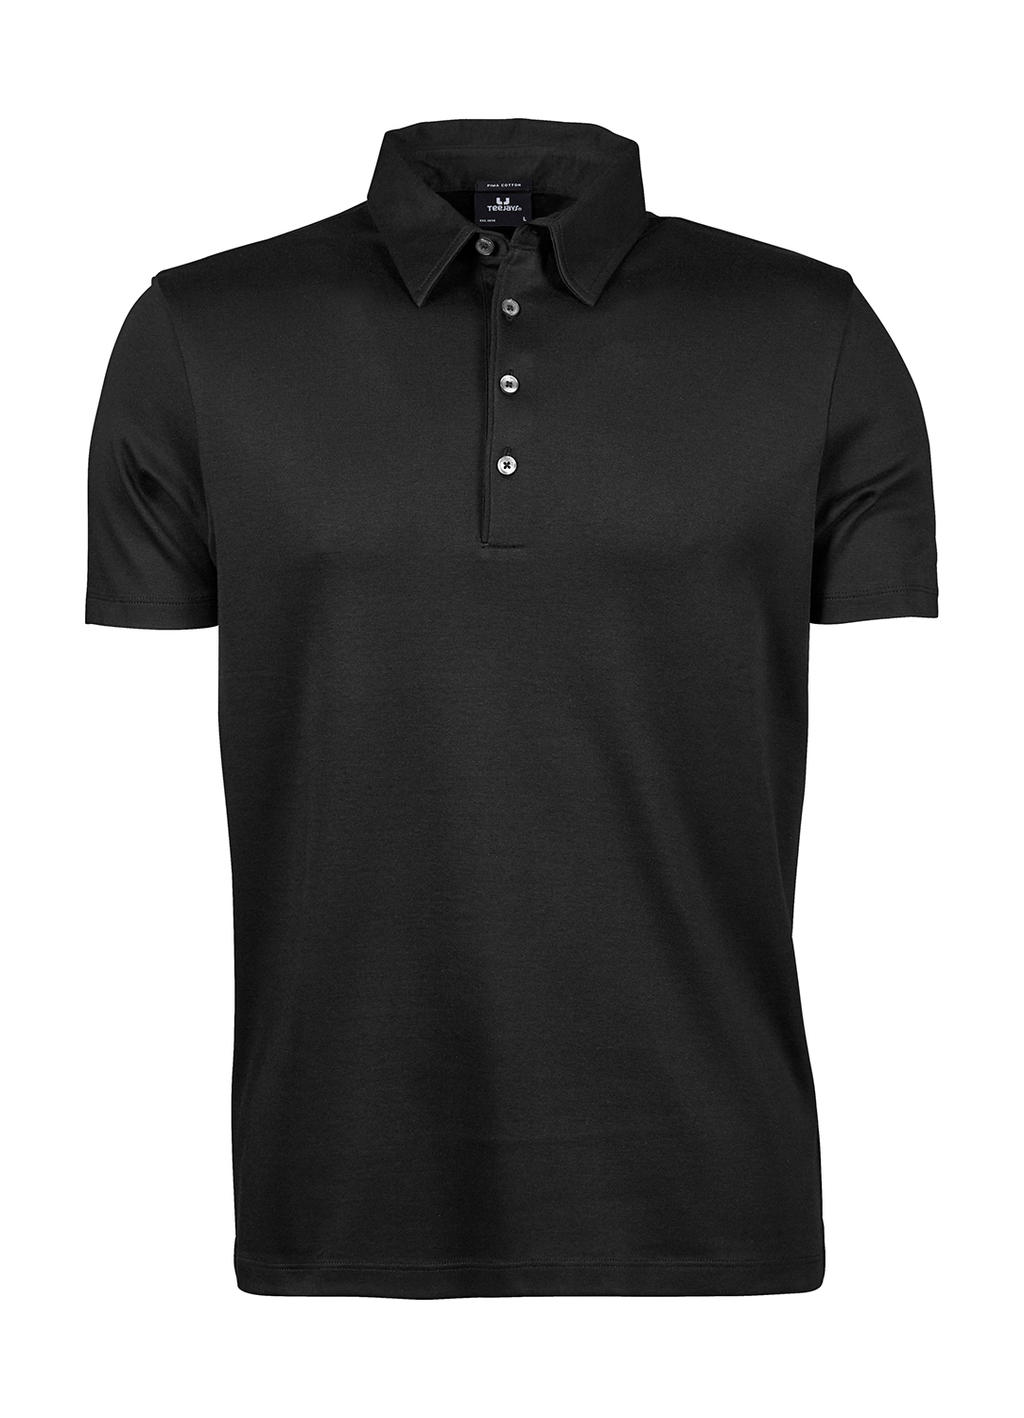  Pima Cotton Polo in Farbe Black